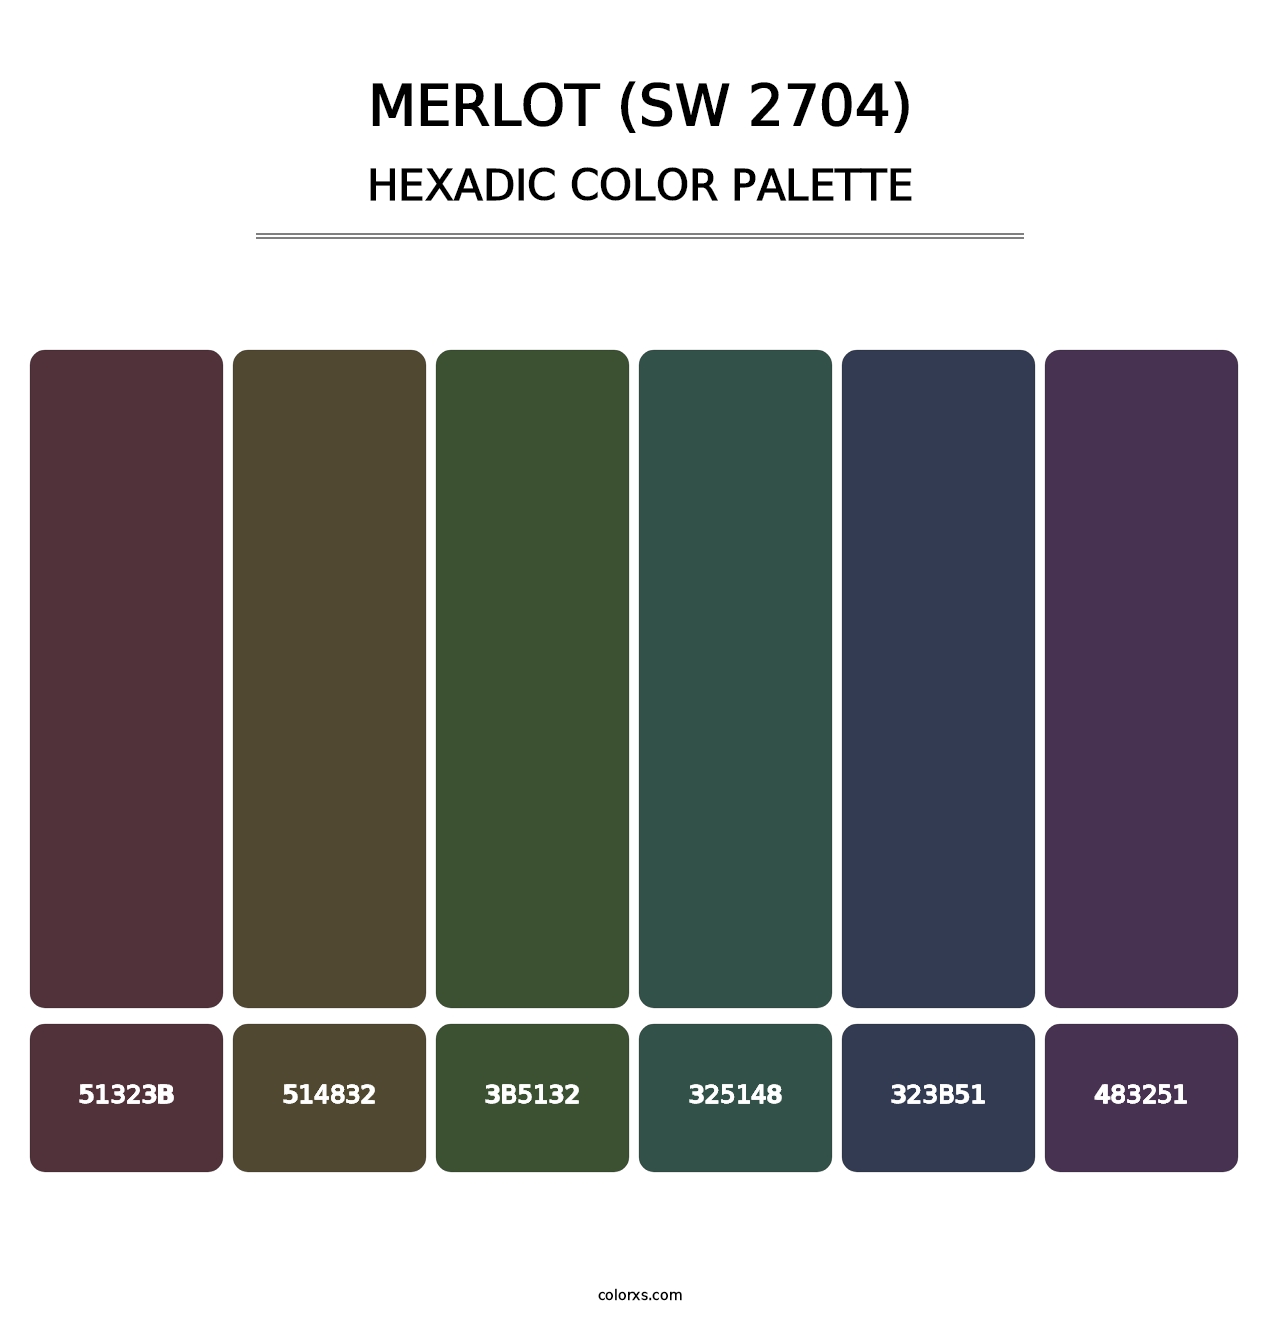 Merlot (SW 2704) - Hexadic Color Palette